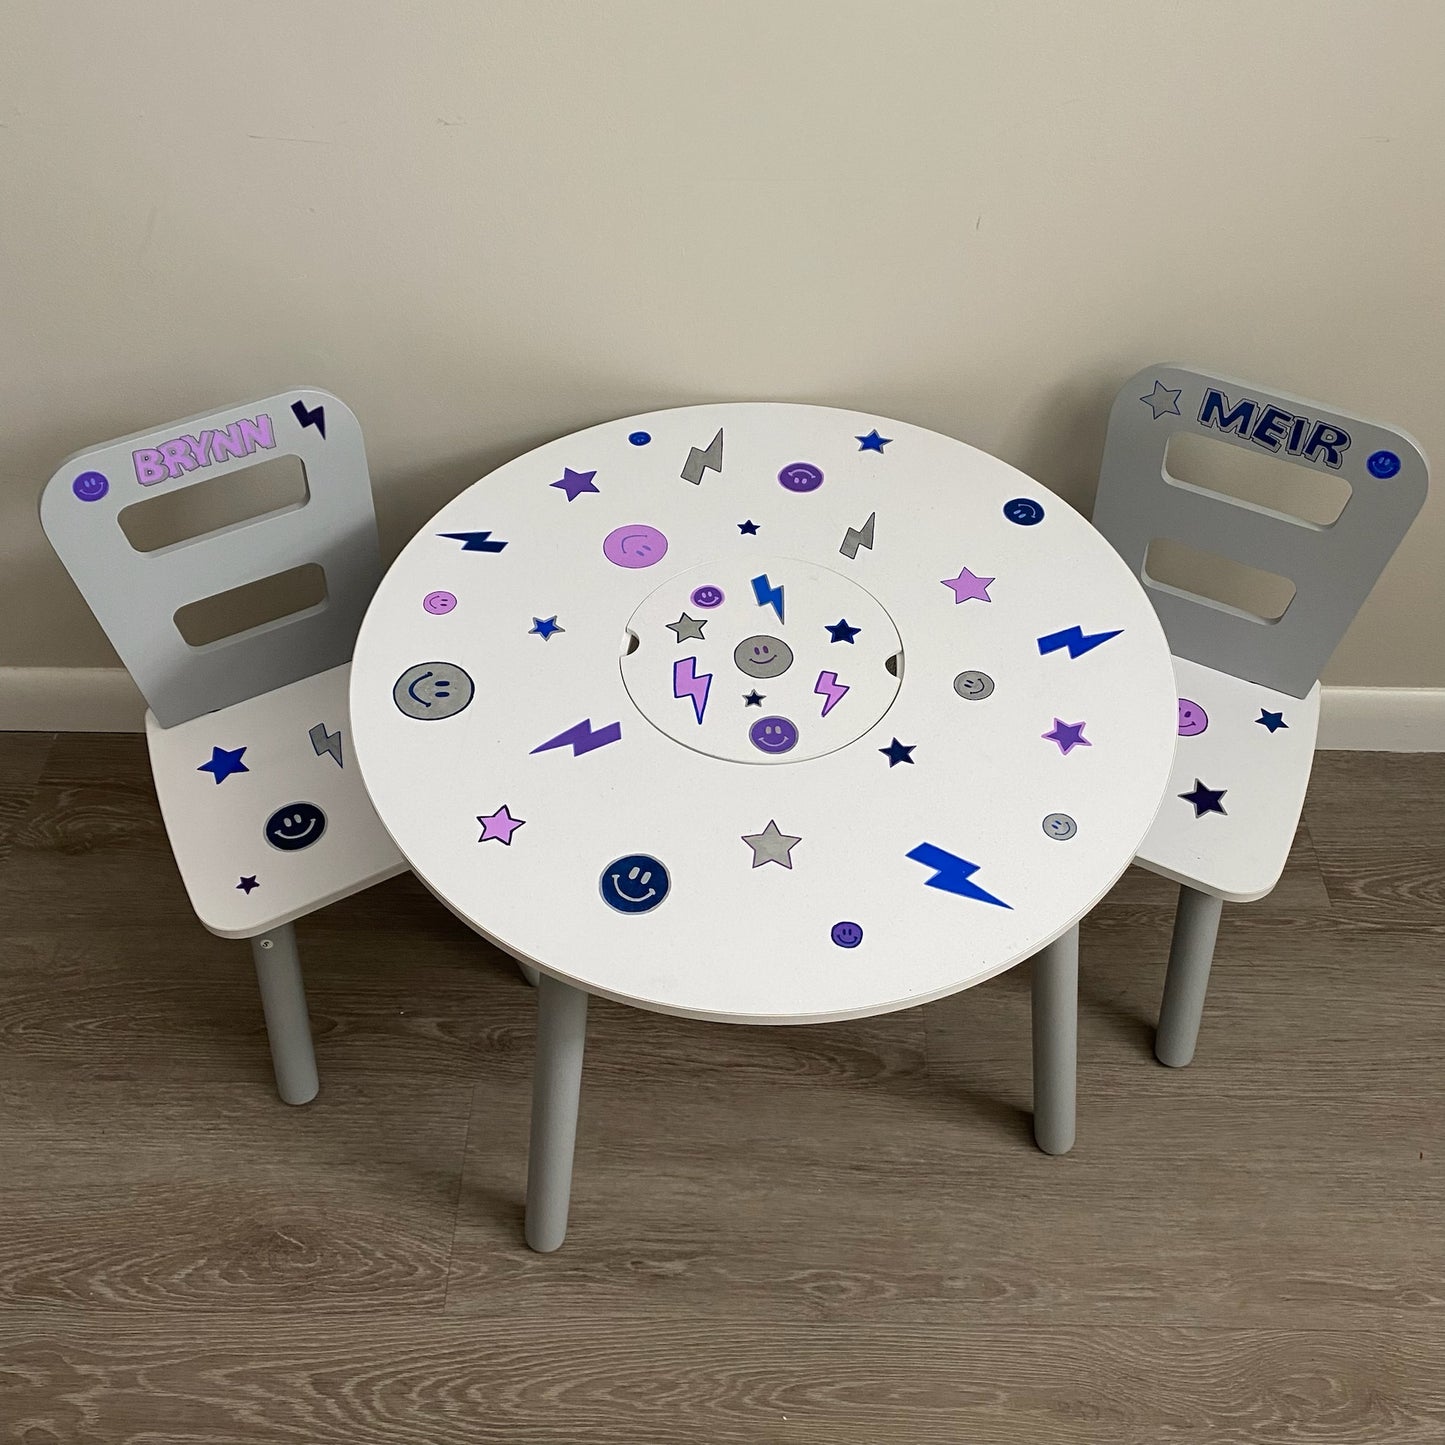 Round Storage Table & 2 Chair Set